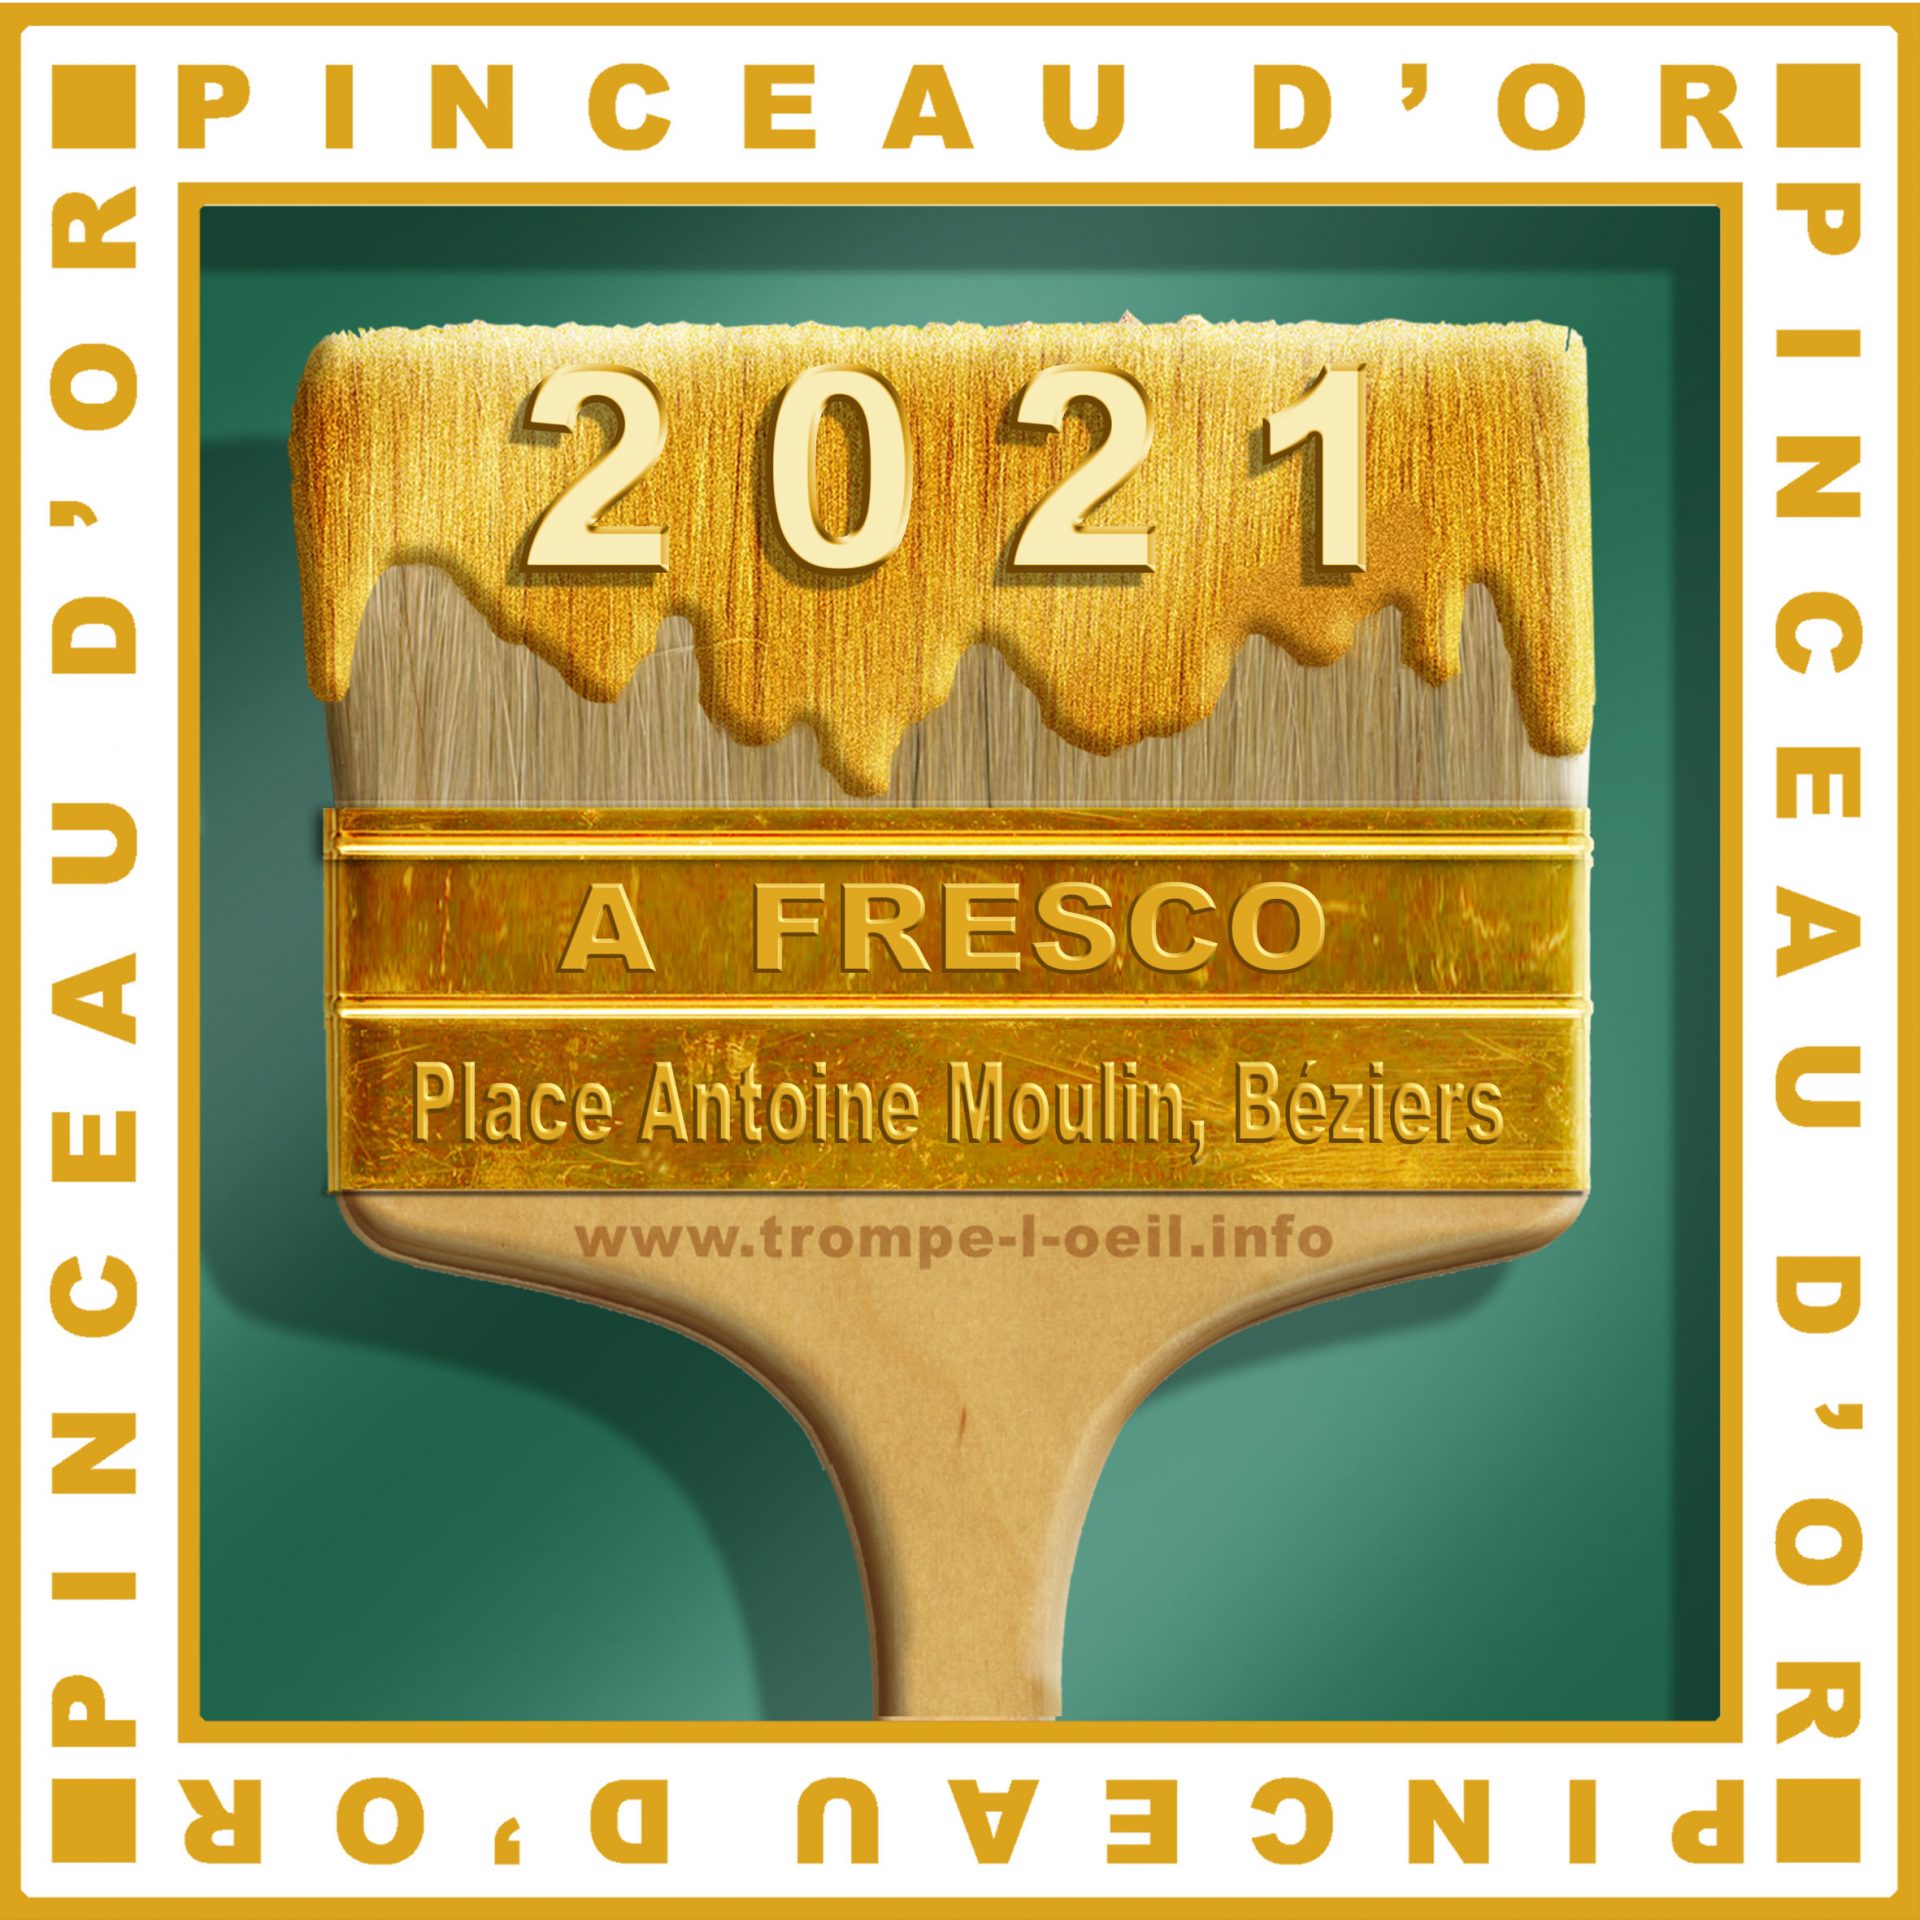 Afresco reçoit la distinction Pinceau d'or 2021 pour sa fresque Place Antoine Emile Moulin à Béziers